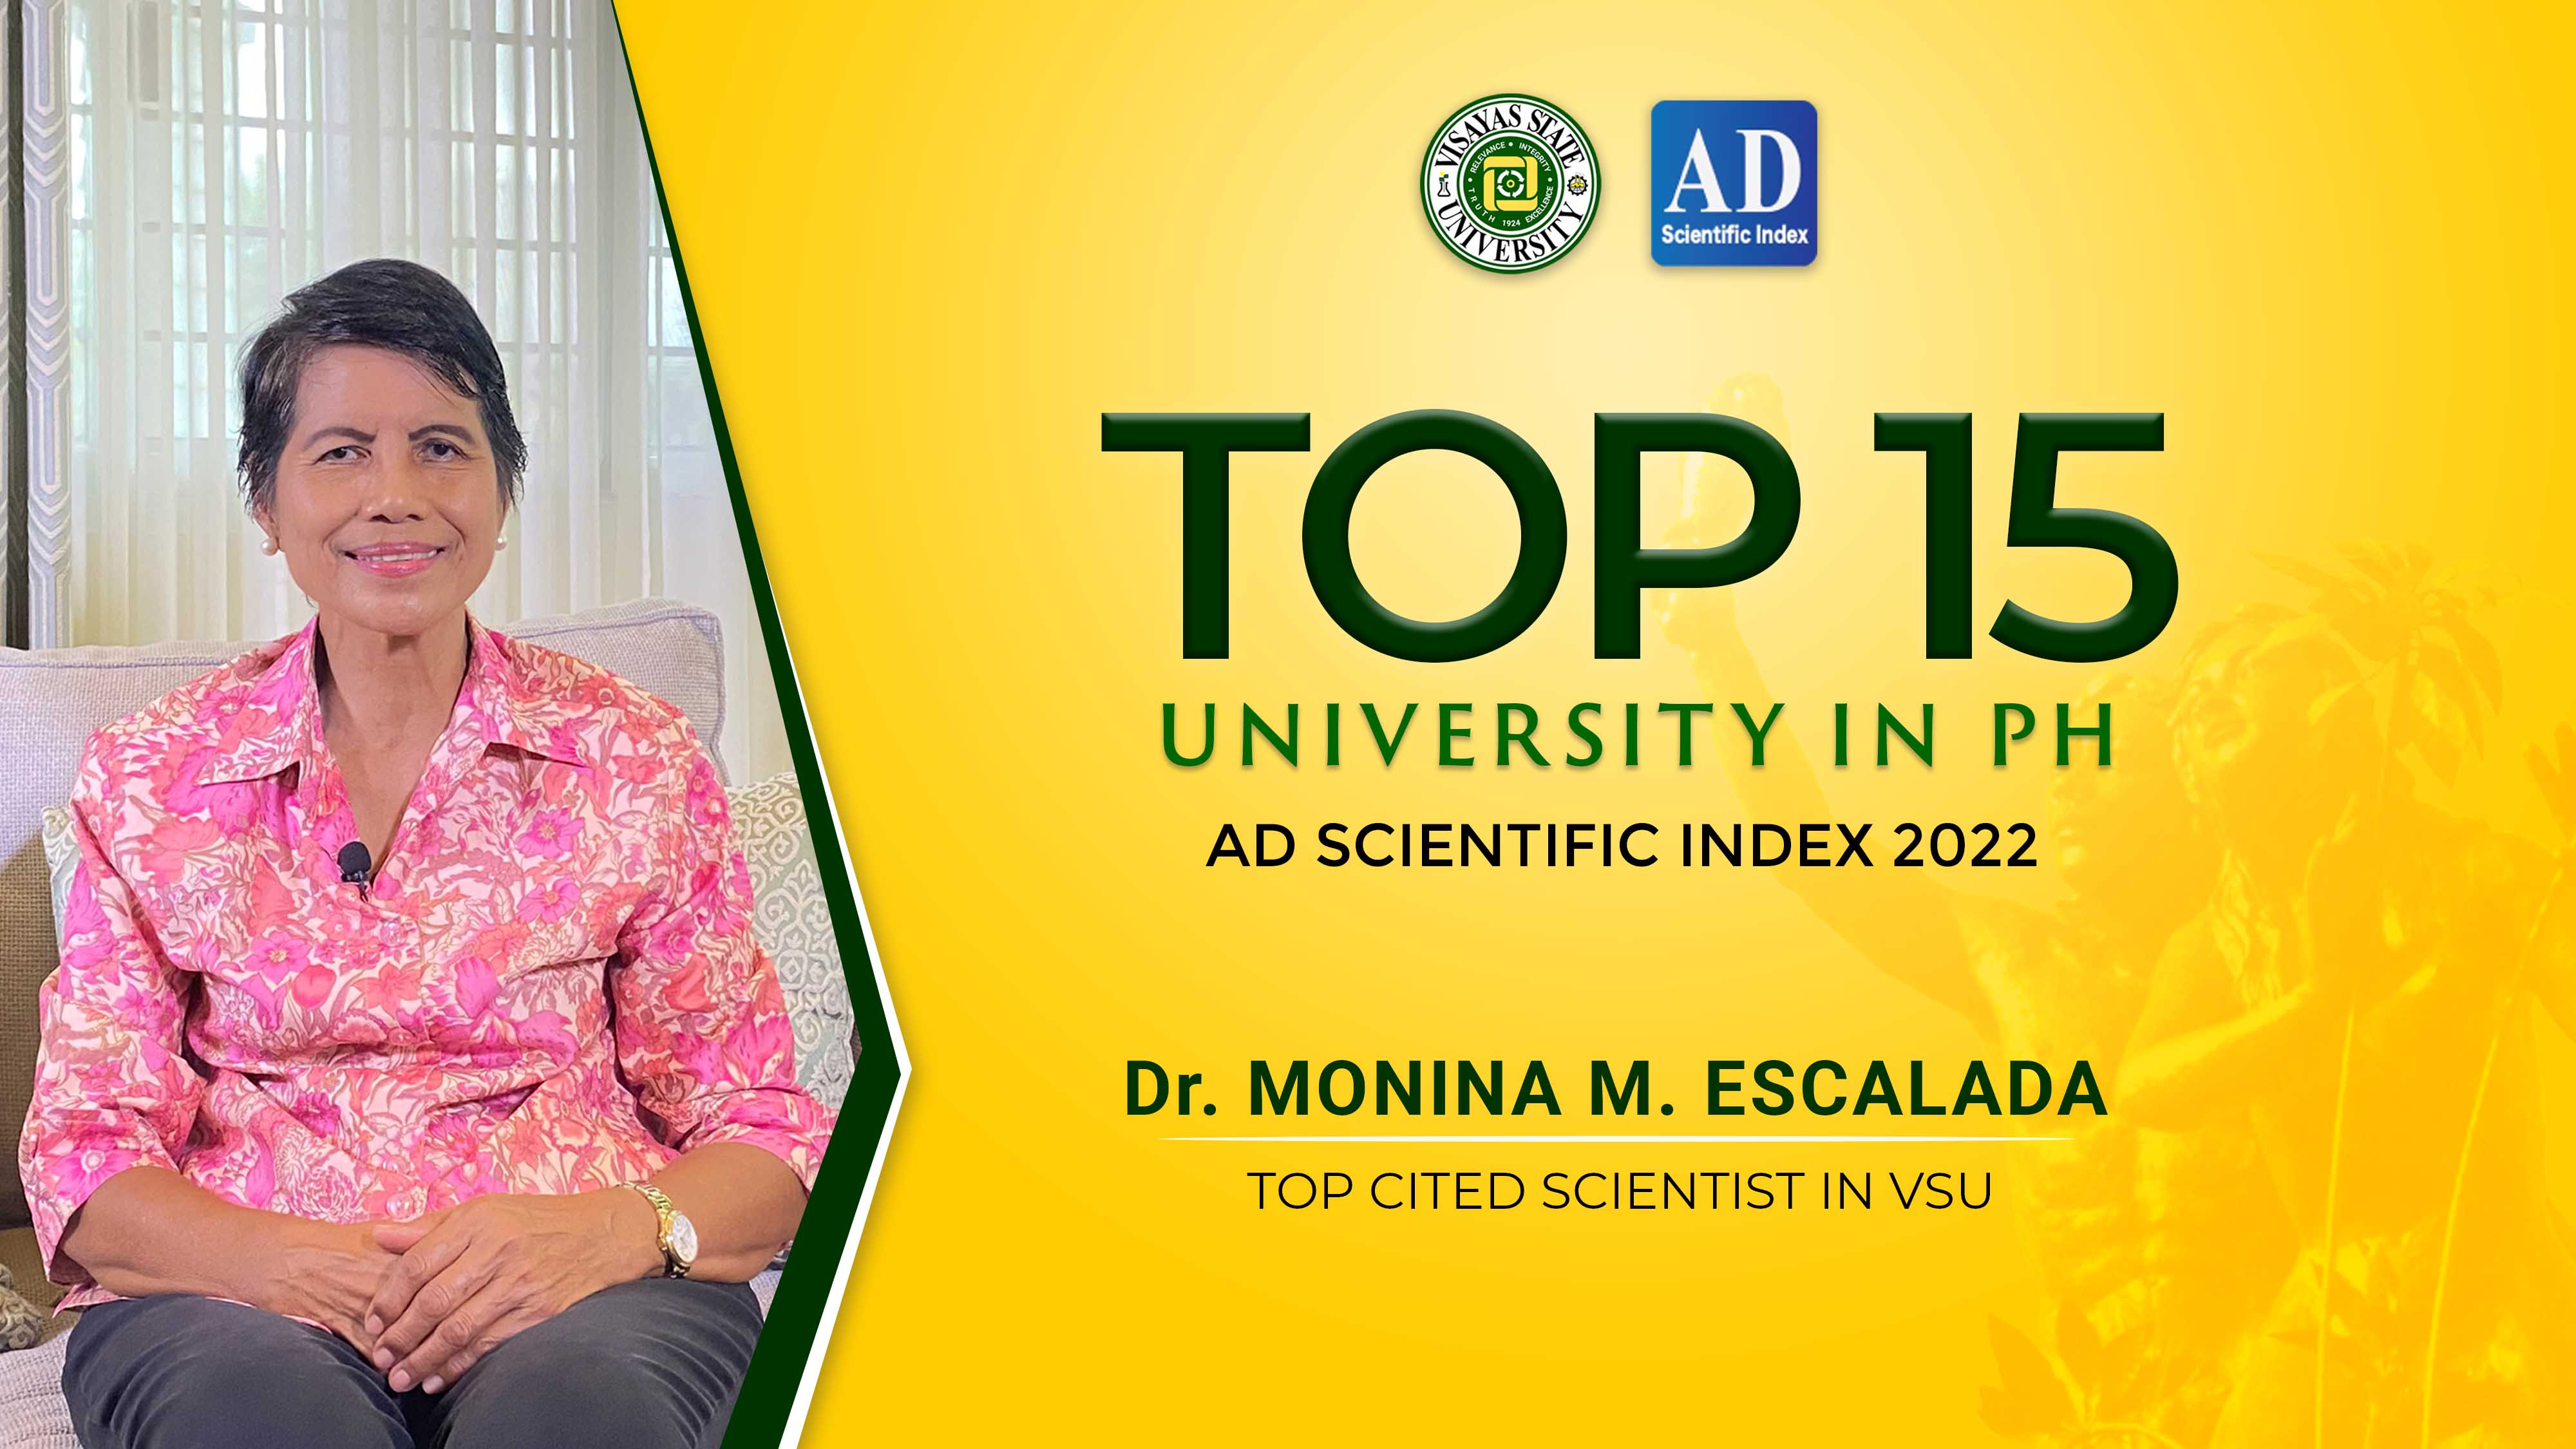 AD Scientific Index ranks VSU top 18